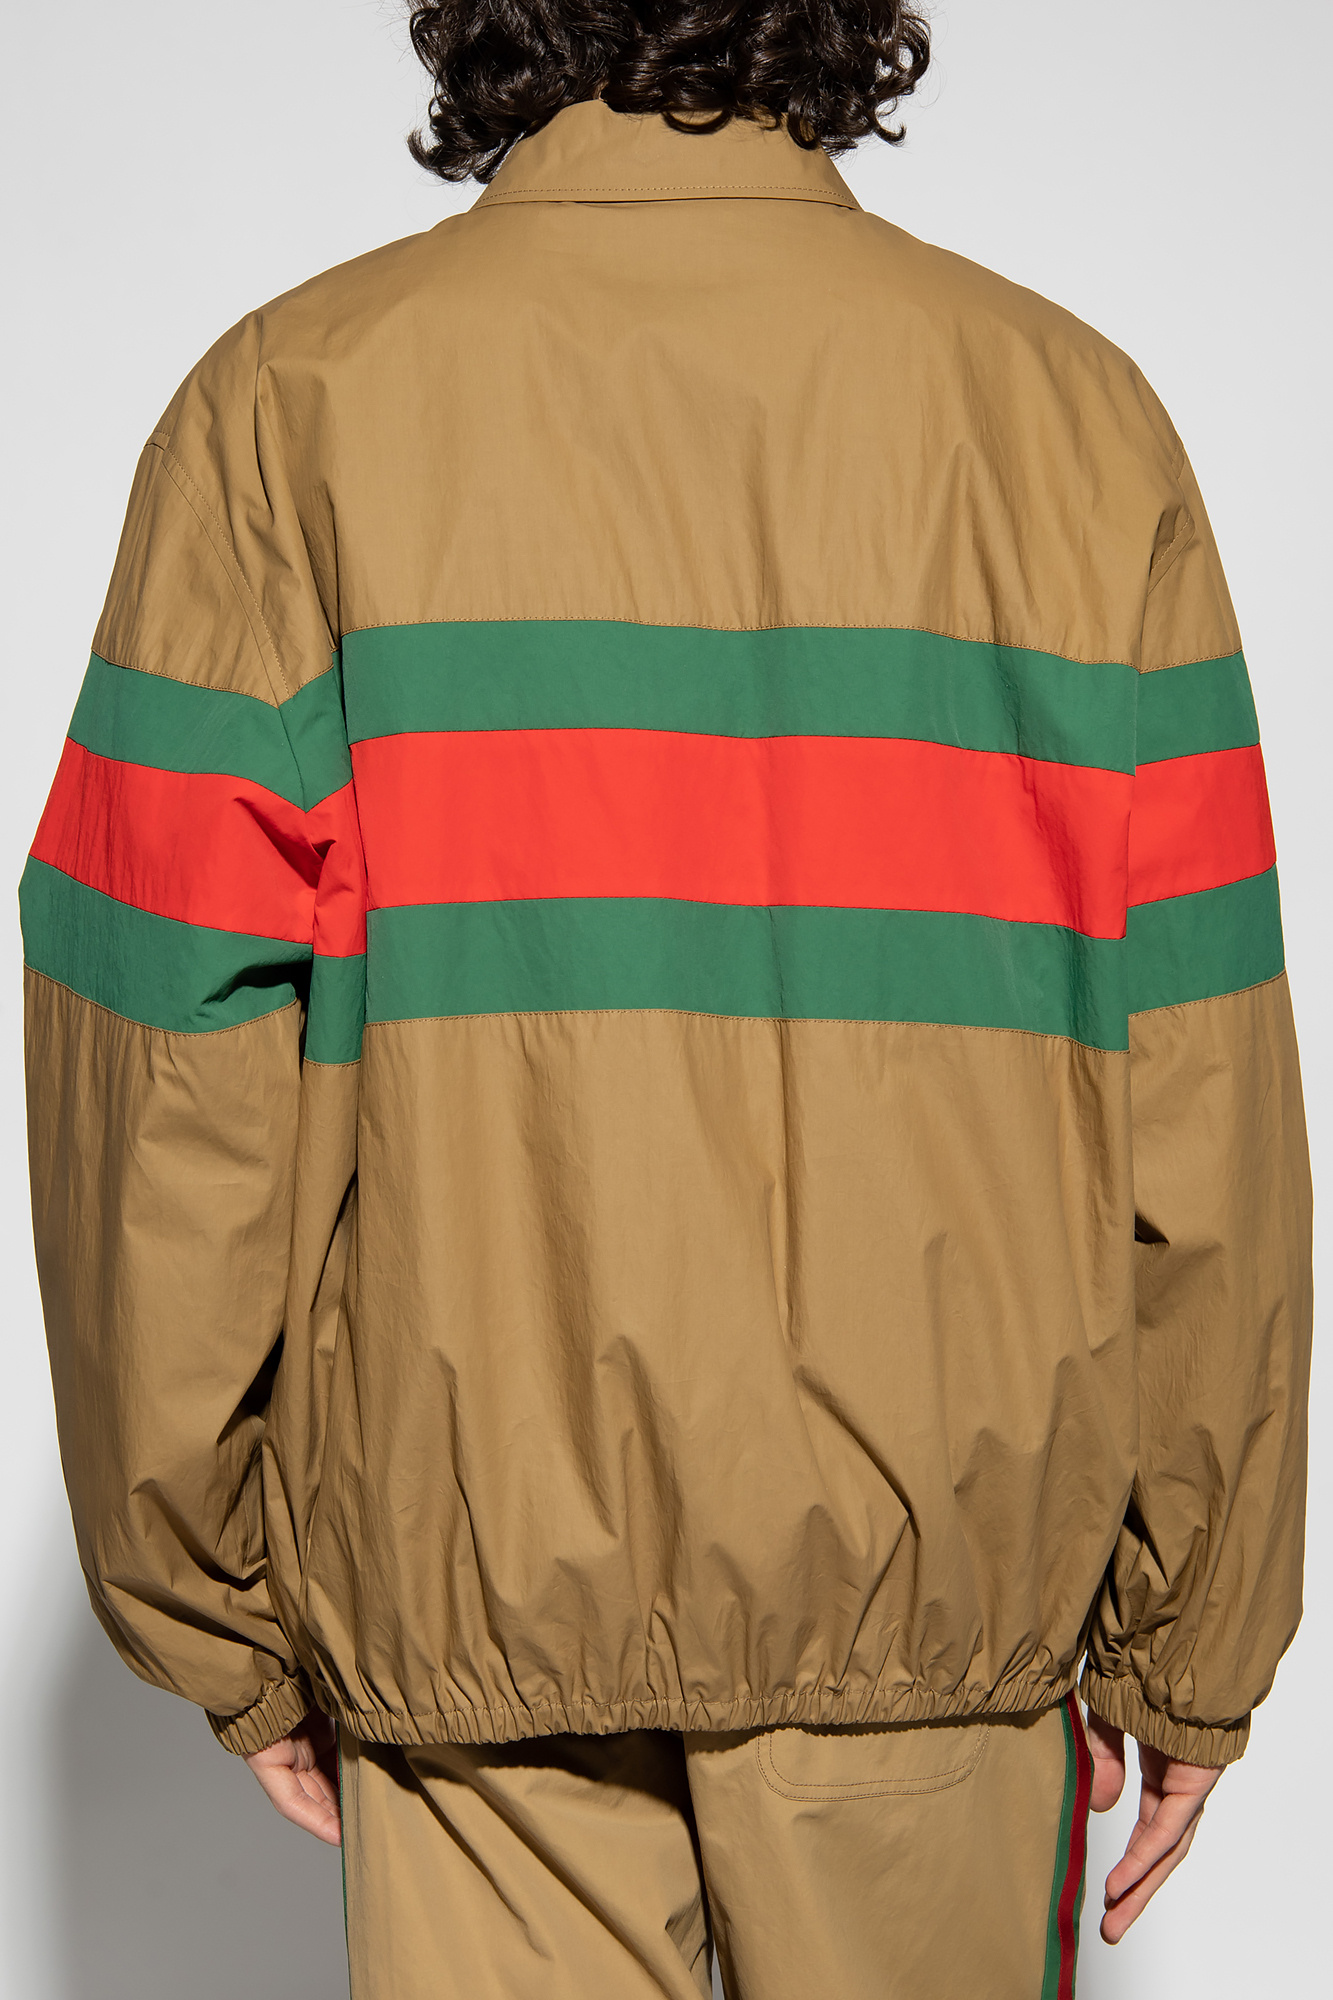 GUCCI GG Jersey Cotton Jacket | eBay